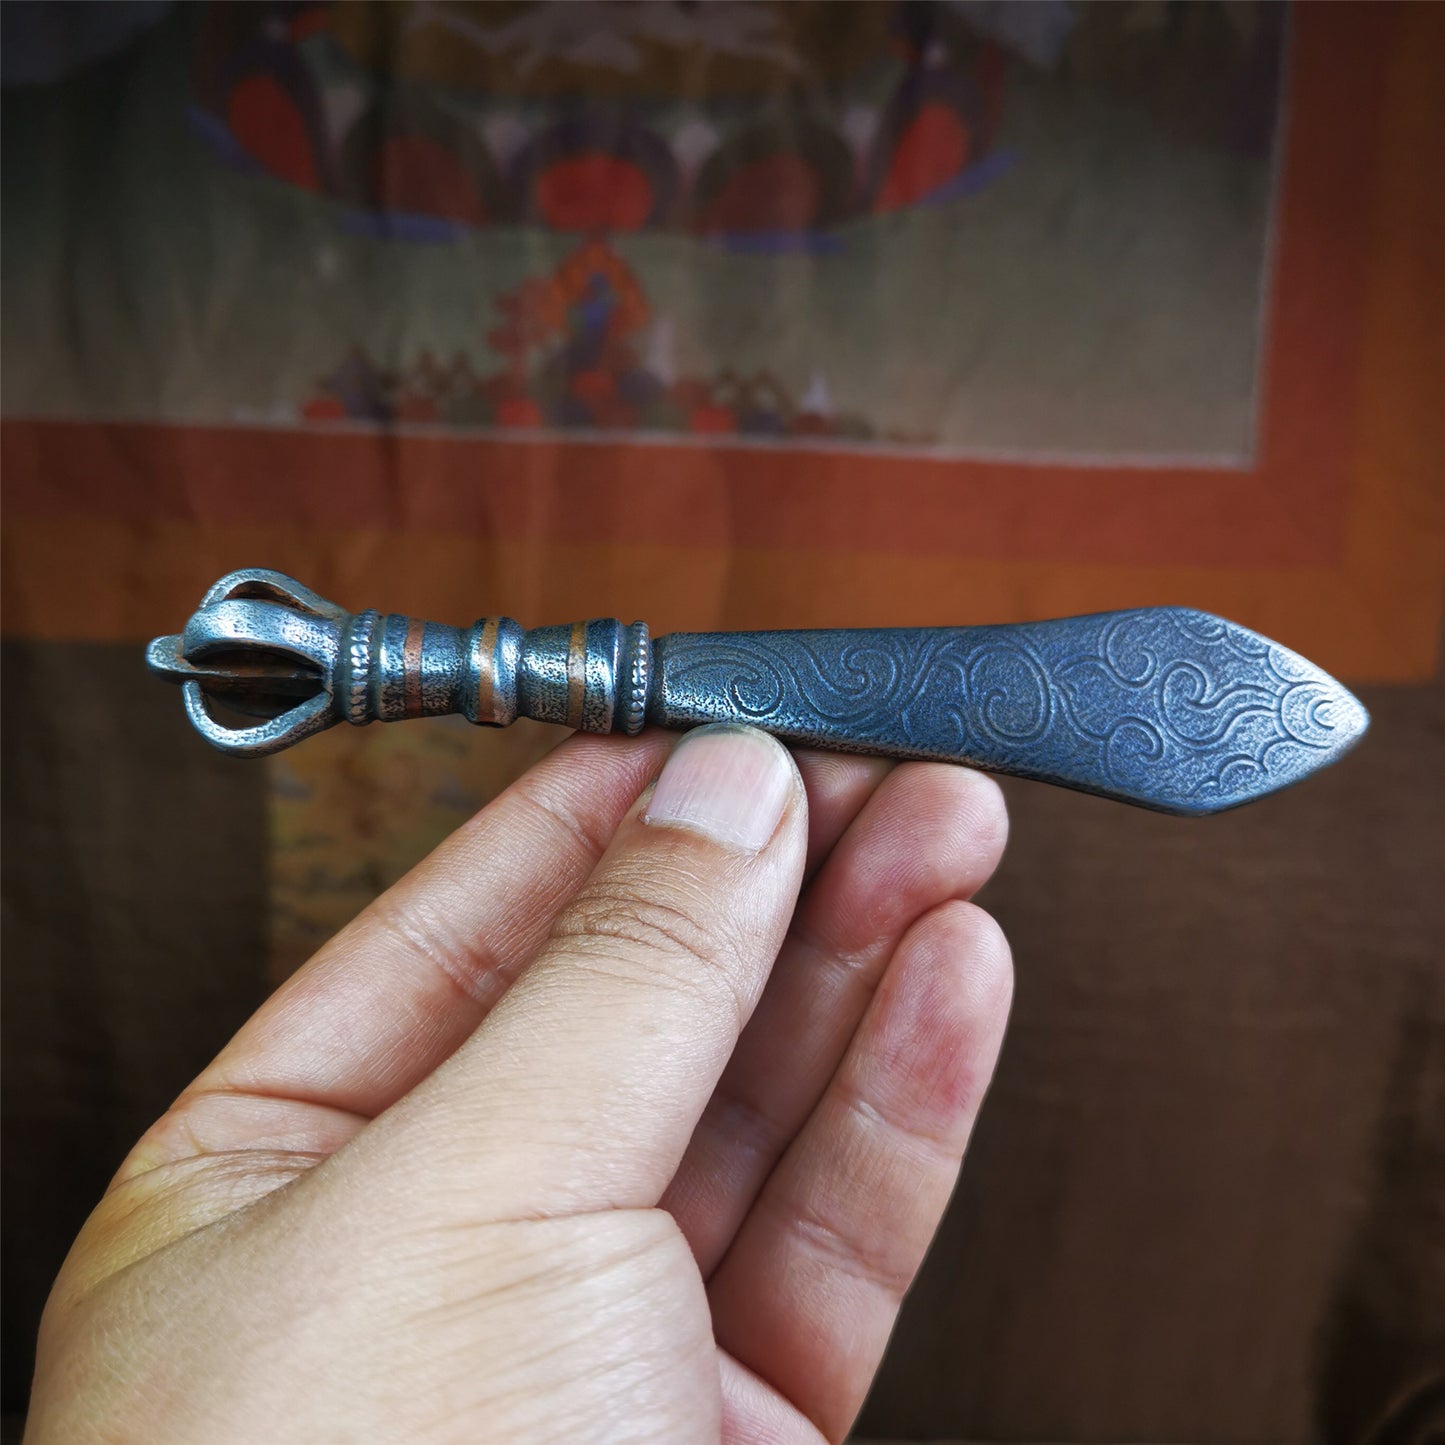 Mansusri Sword